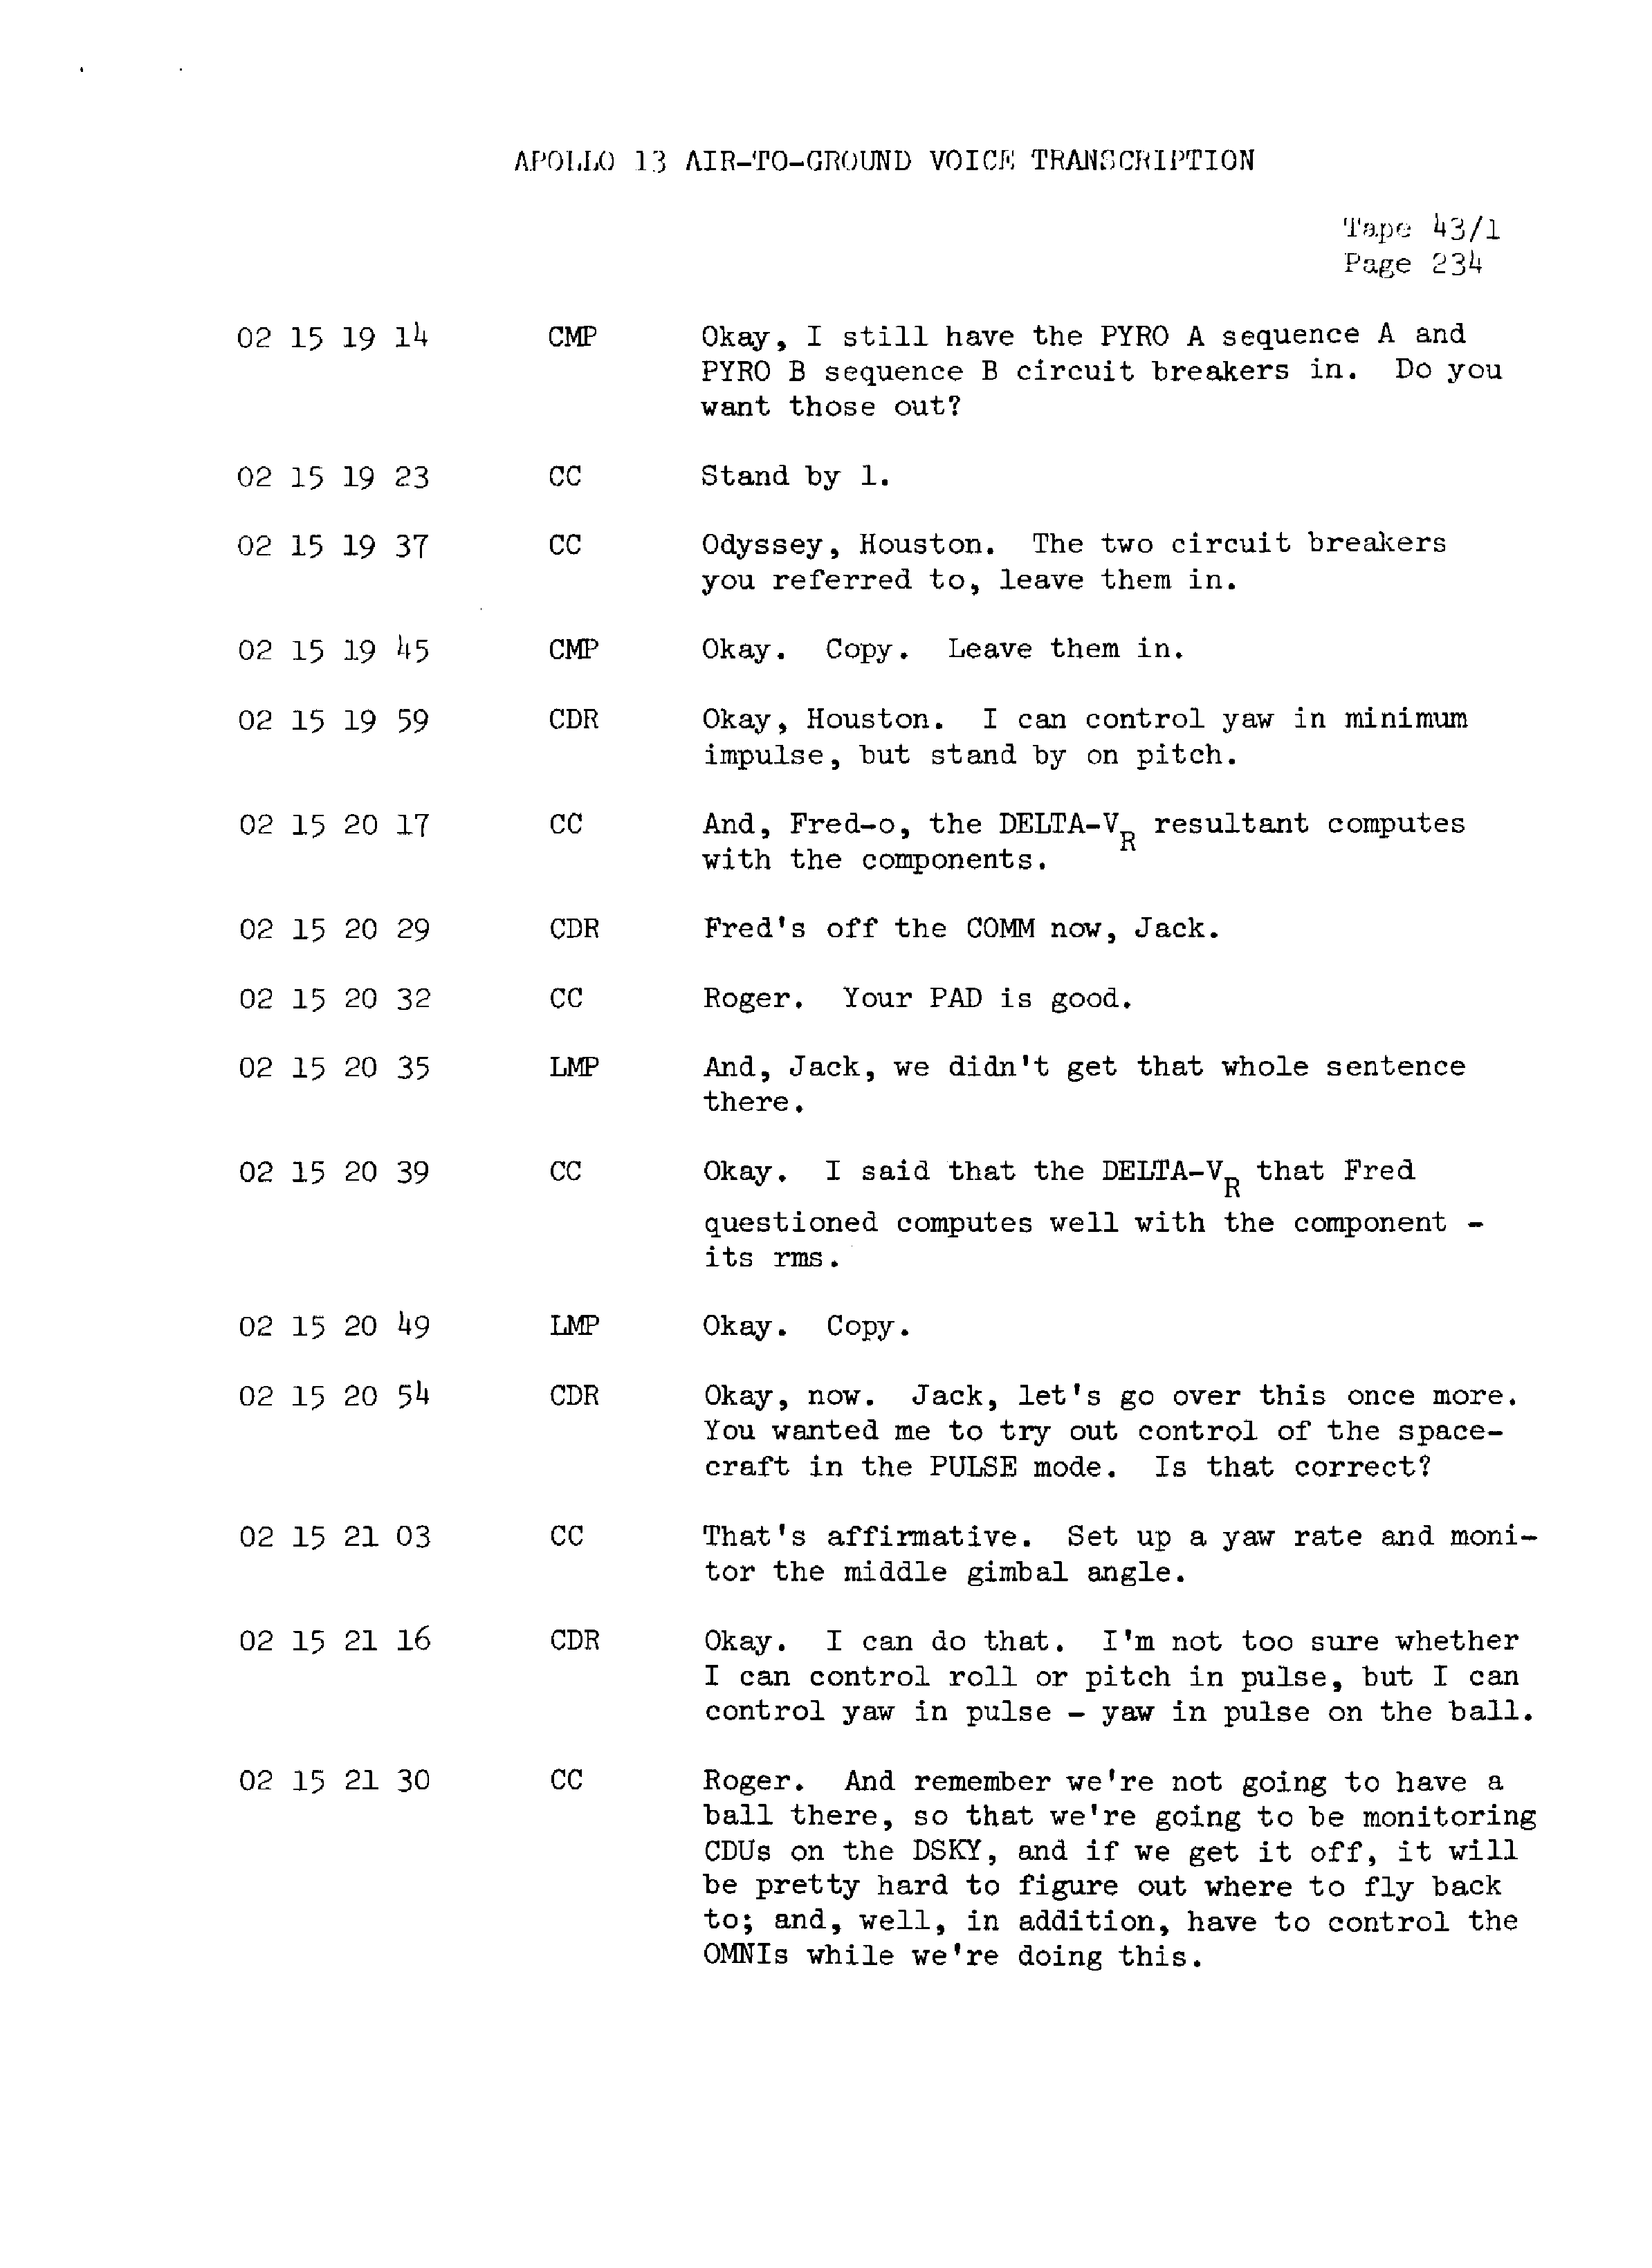 Page 241 of Apollo 13’s original transcript